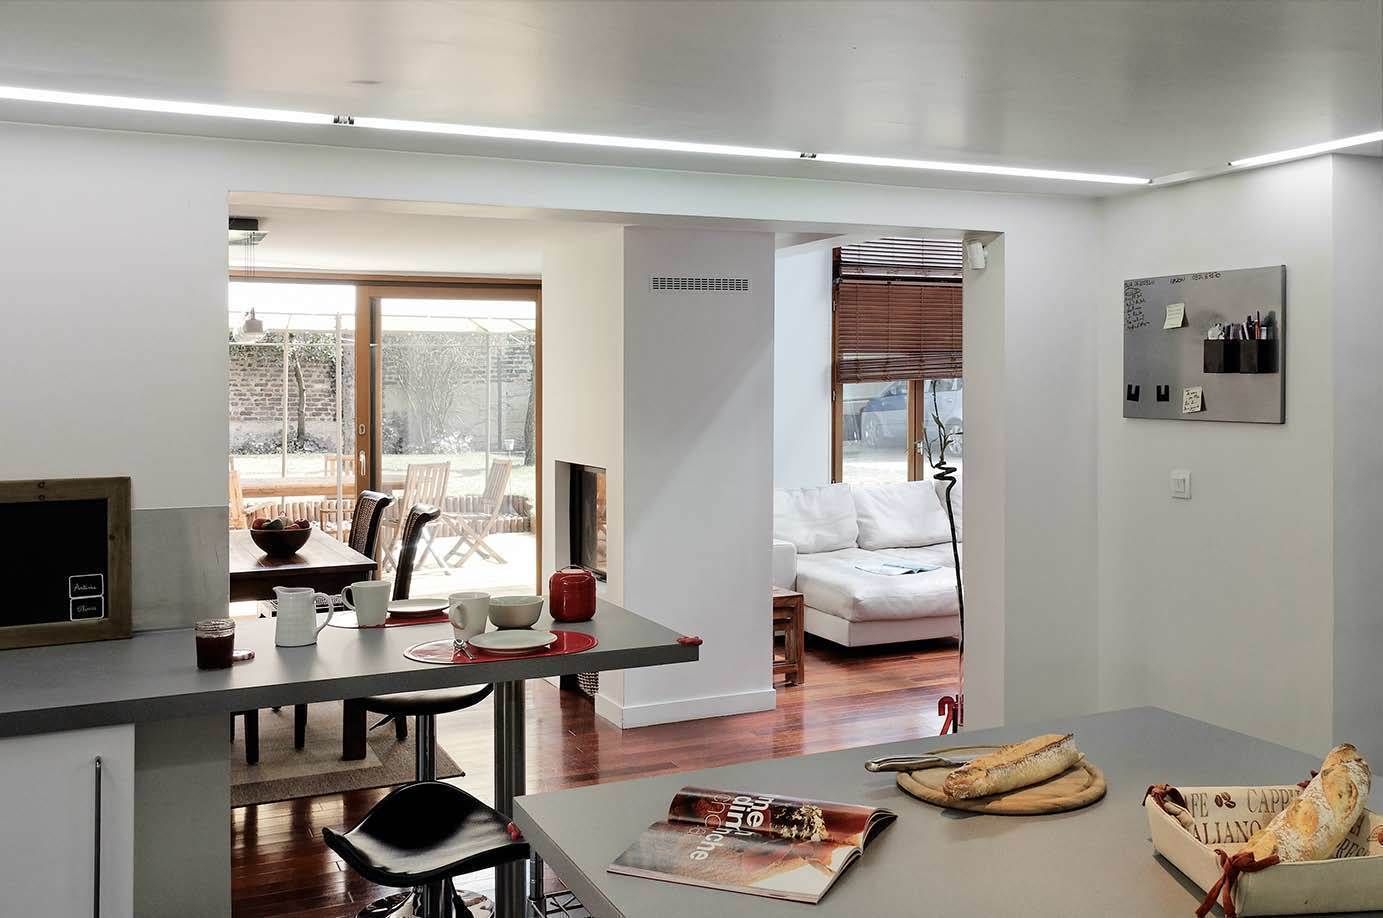 Réfection complète d’une maison à Colombes + extension, 170m² , ATELIER FB ATELIER FB Nhà bếp phong cách hiện đại